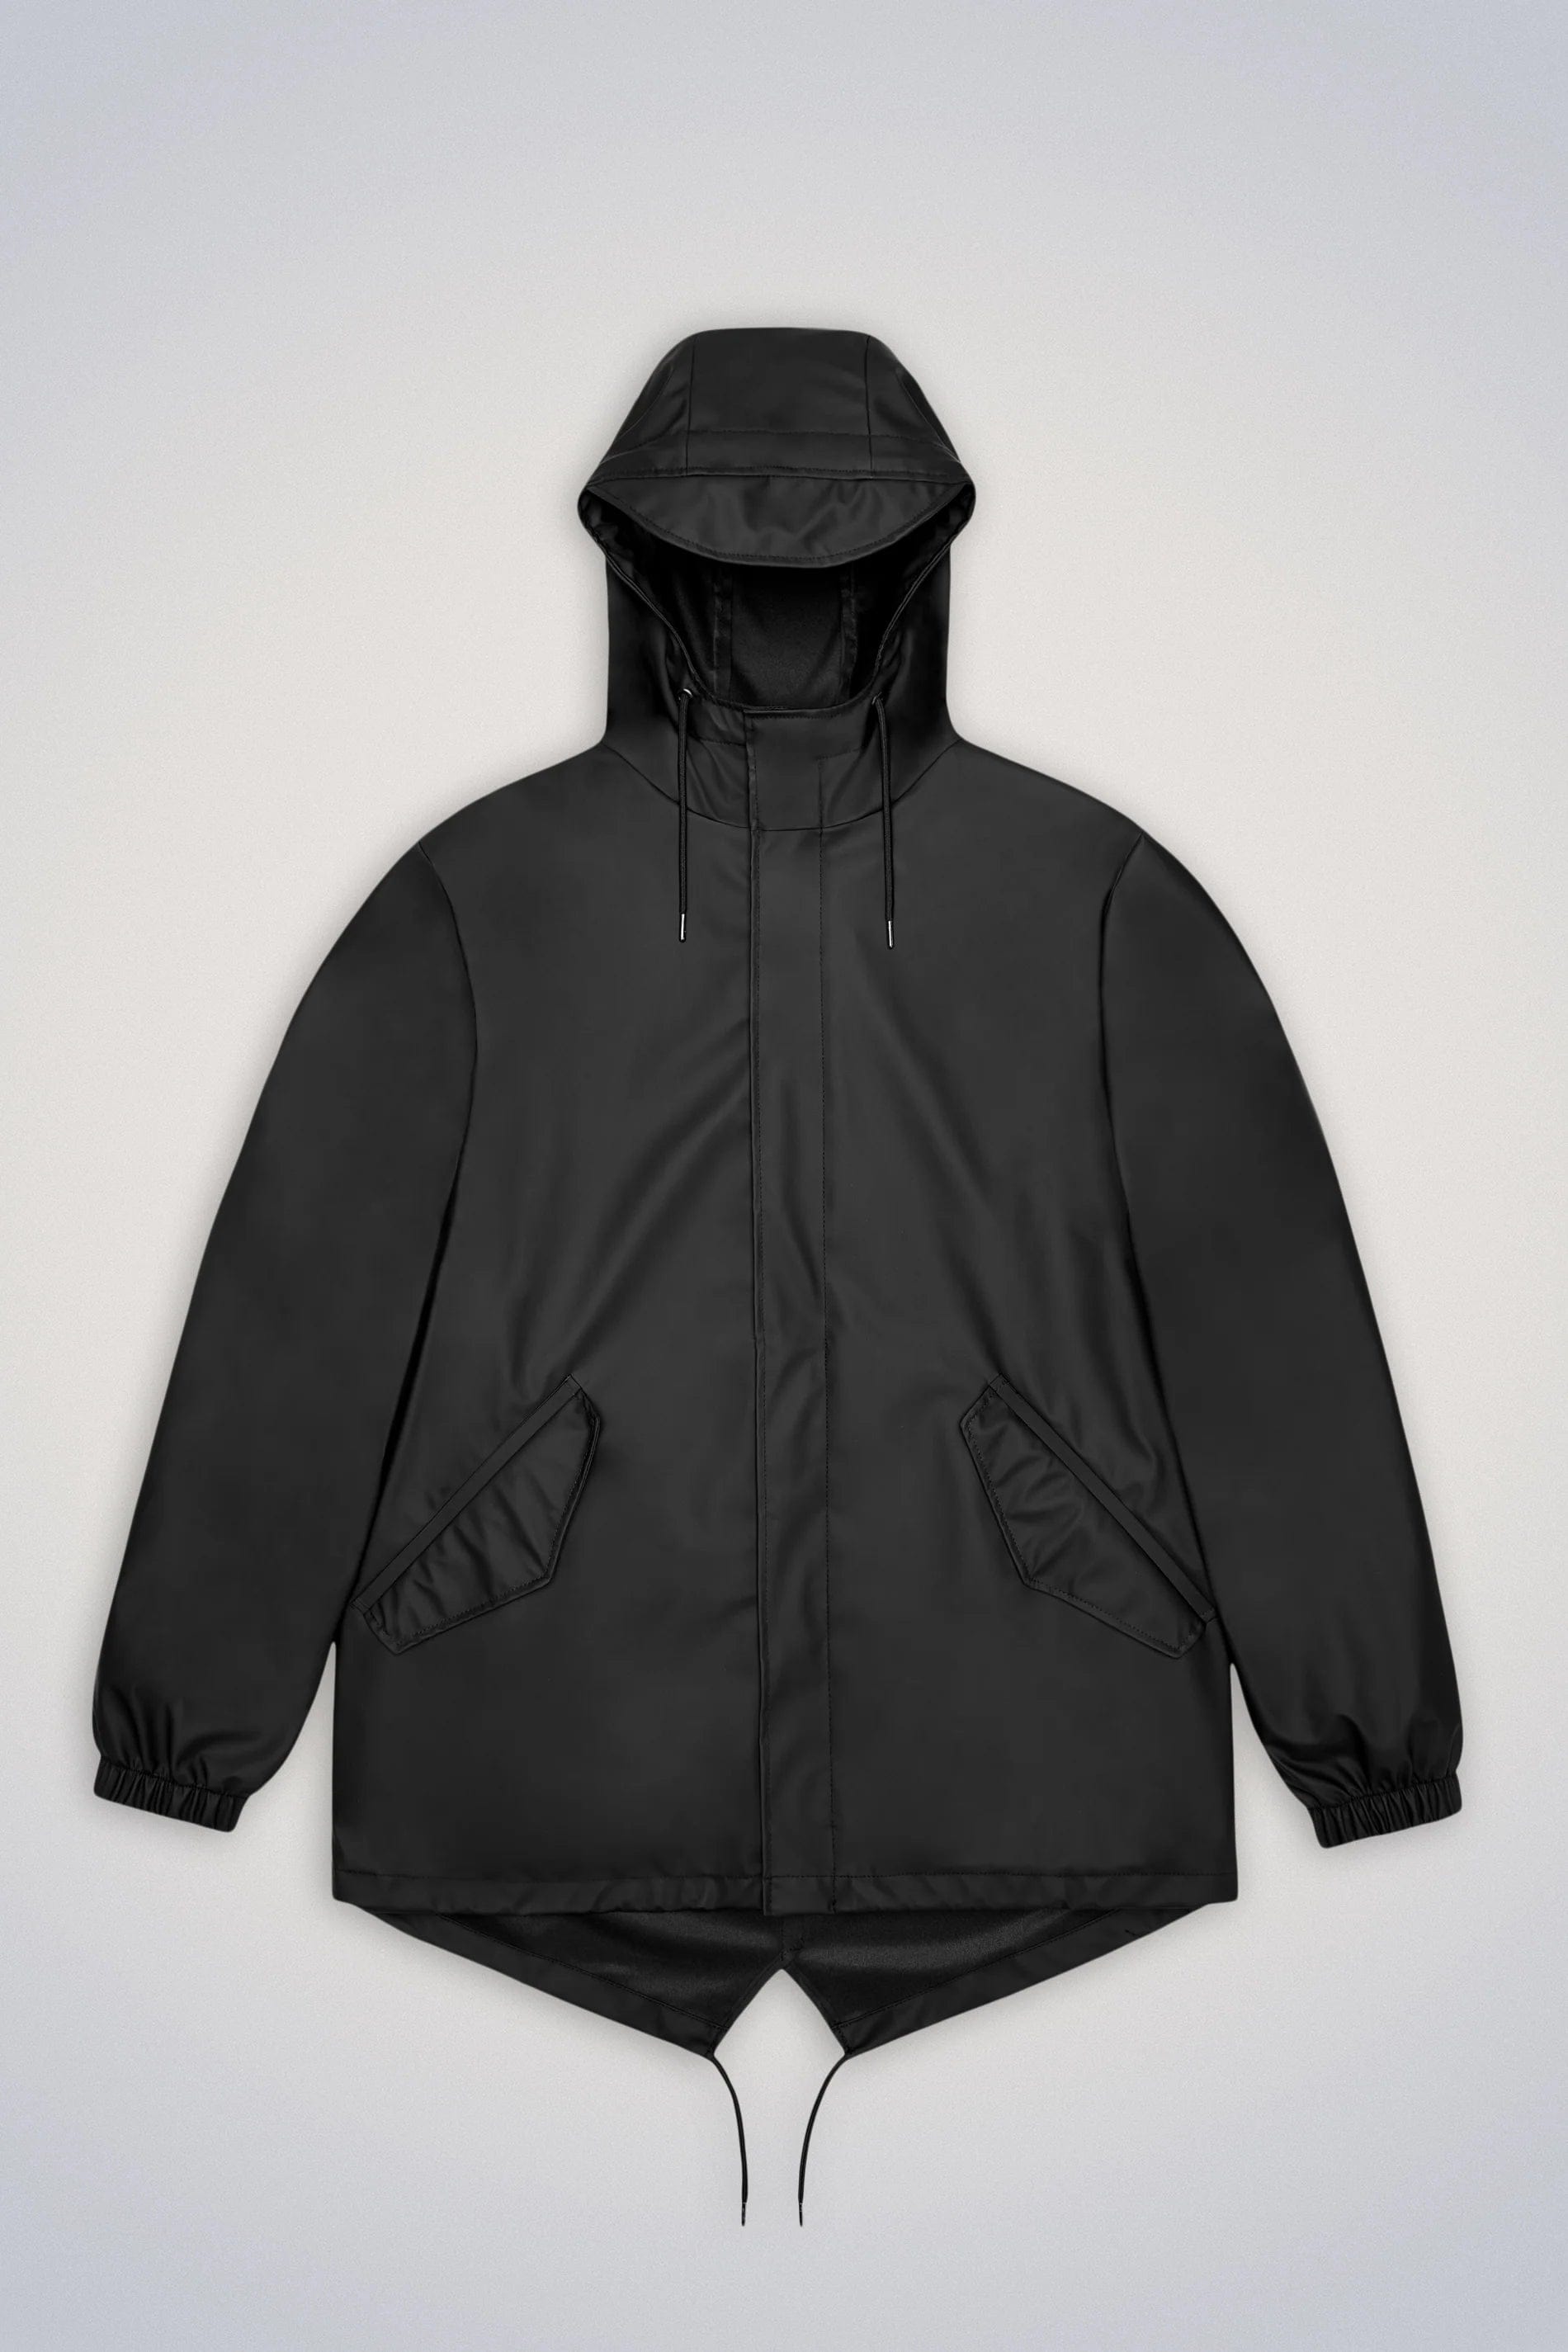 Rains Veste/Blouson Black / XS Imperméable Rains - Fishtail Jacket